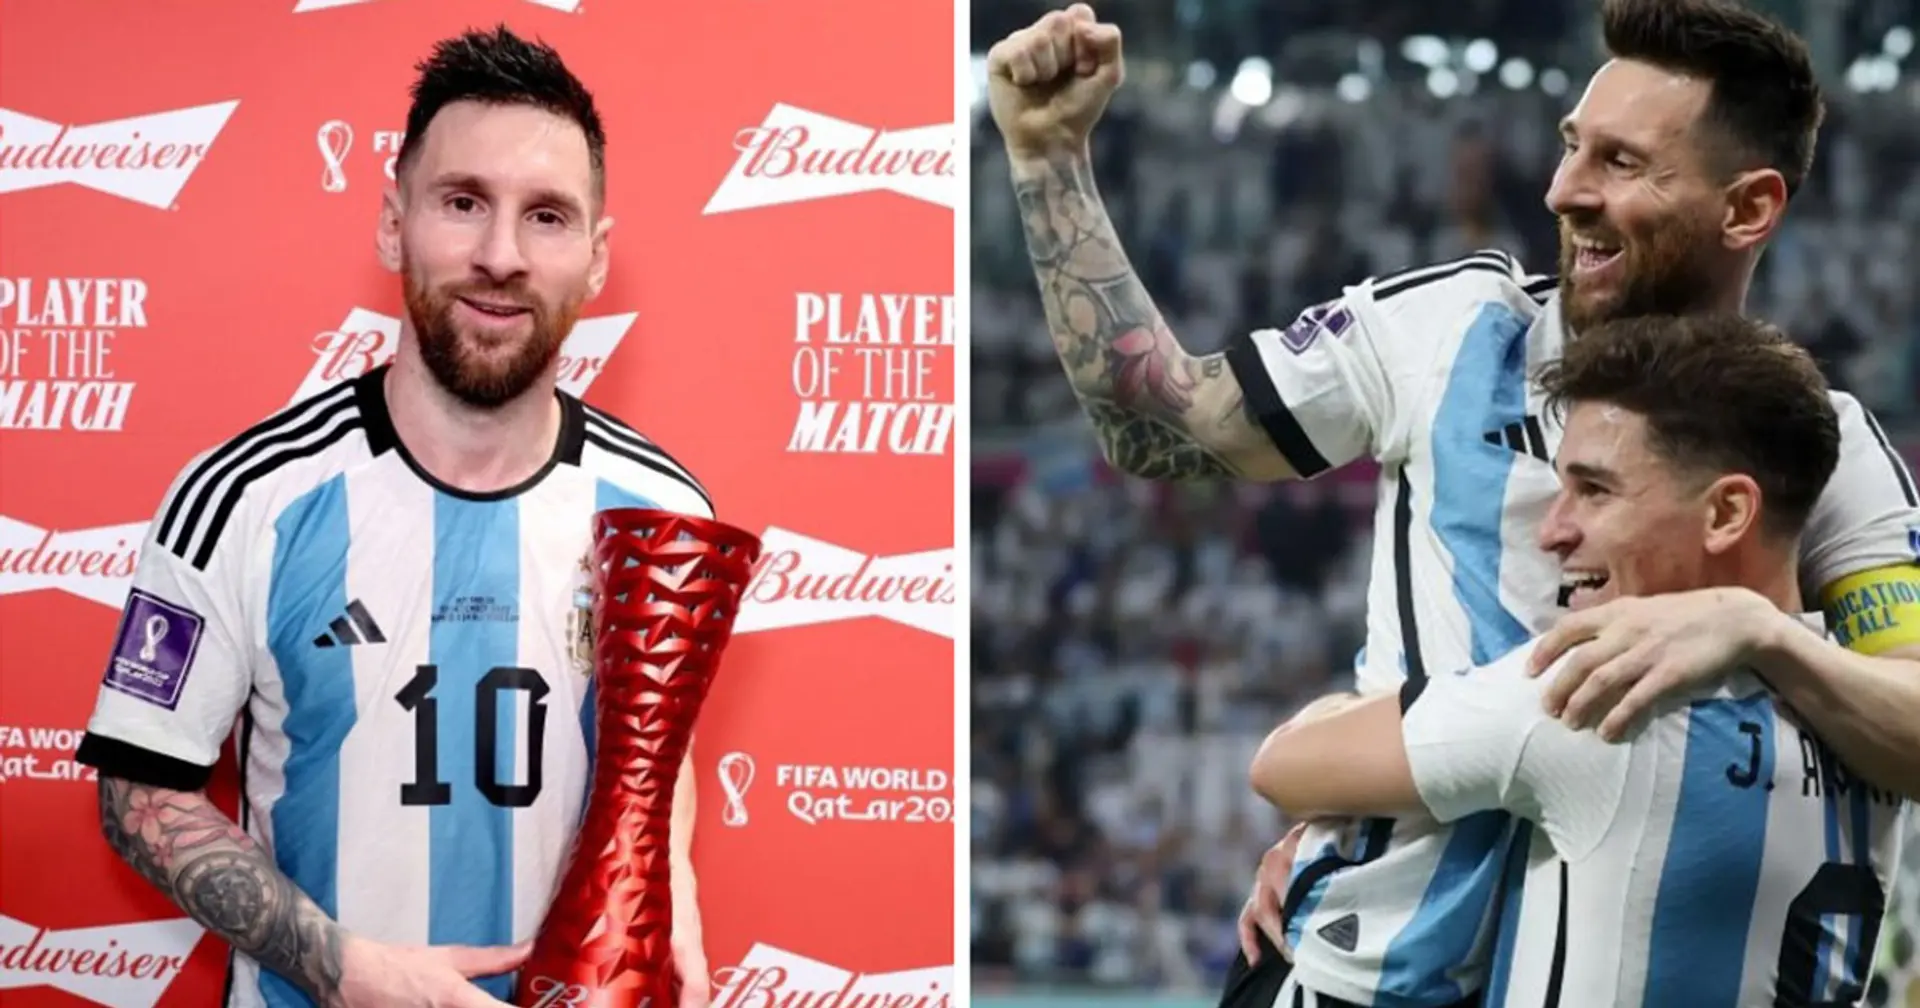 Ein weiterer Rekord für Messi: Keiner wurde so oft zum besten Spieler des Spiels gekürt 